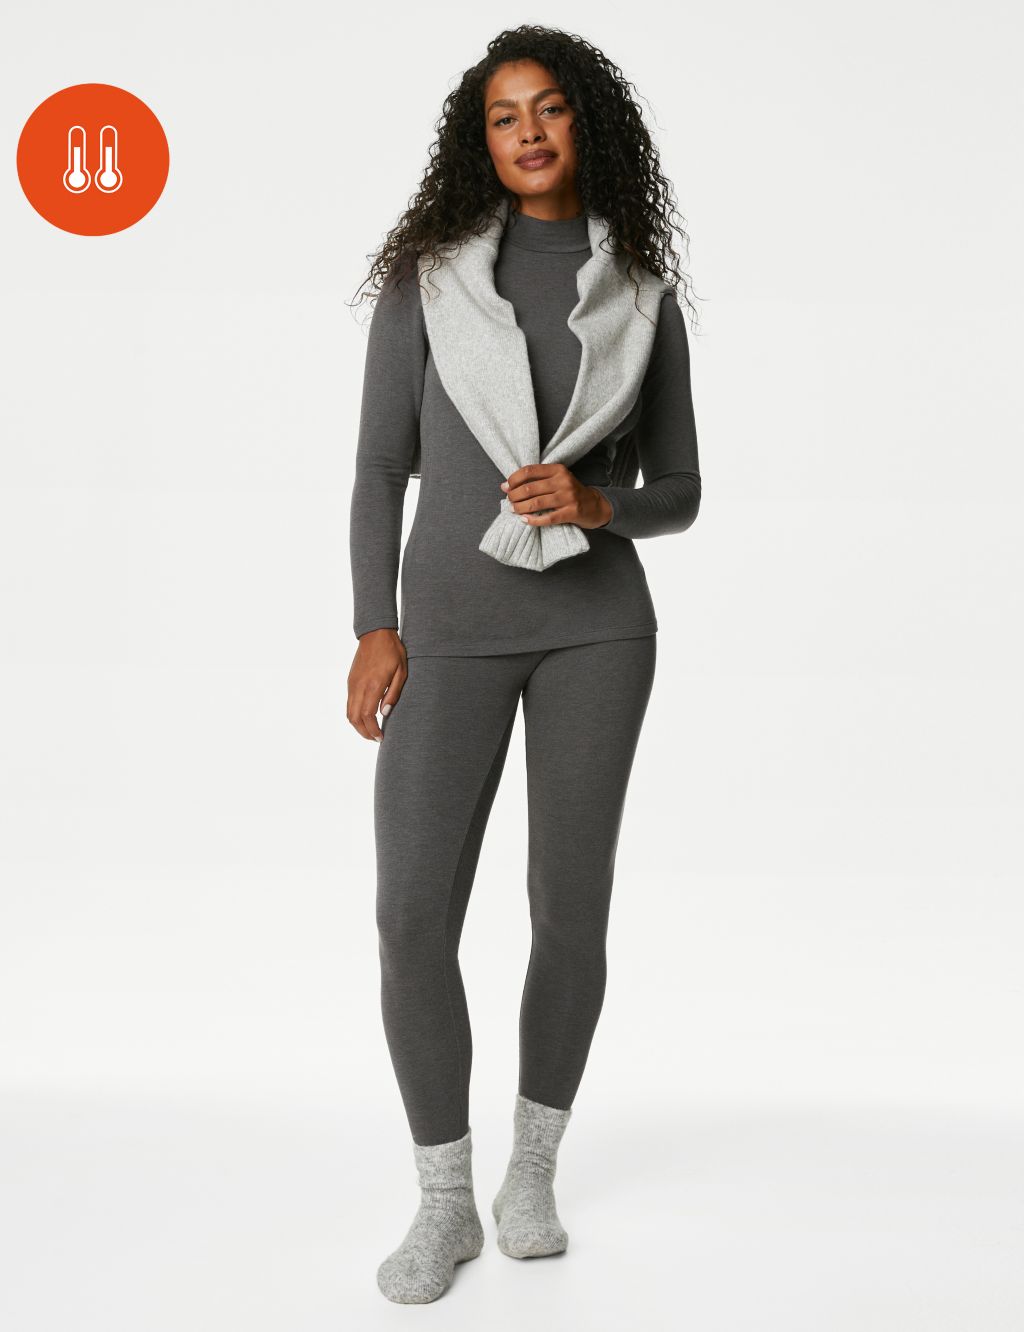 1 x RAW Customer Returns Merlvida thermal leggings for women